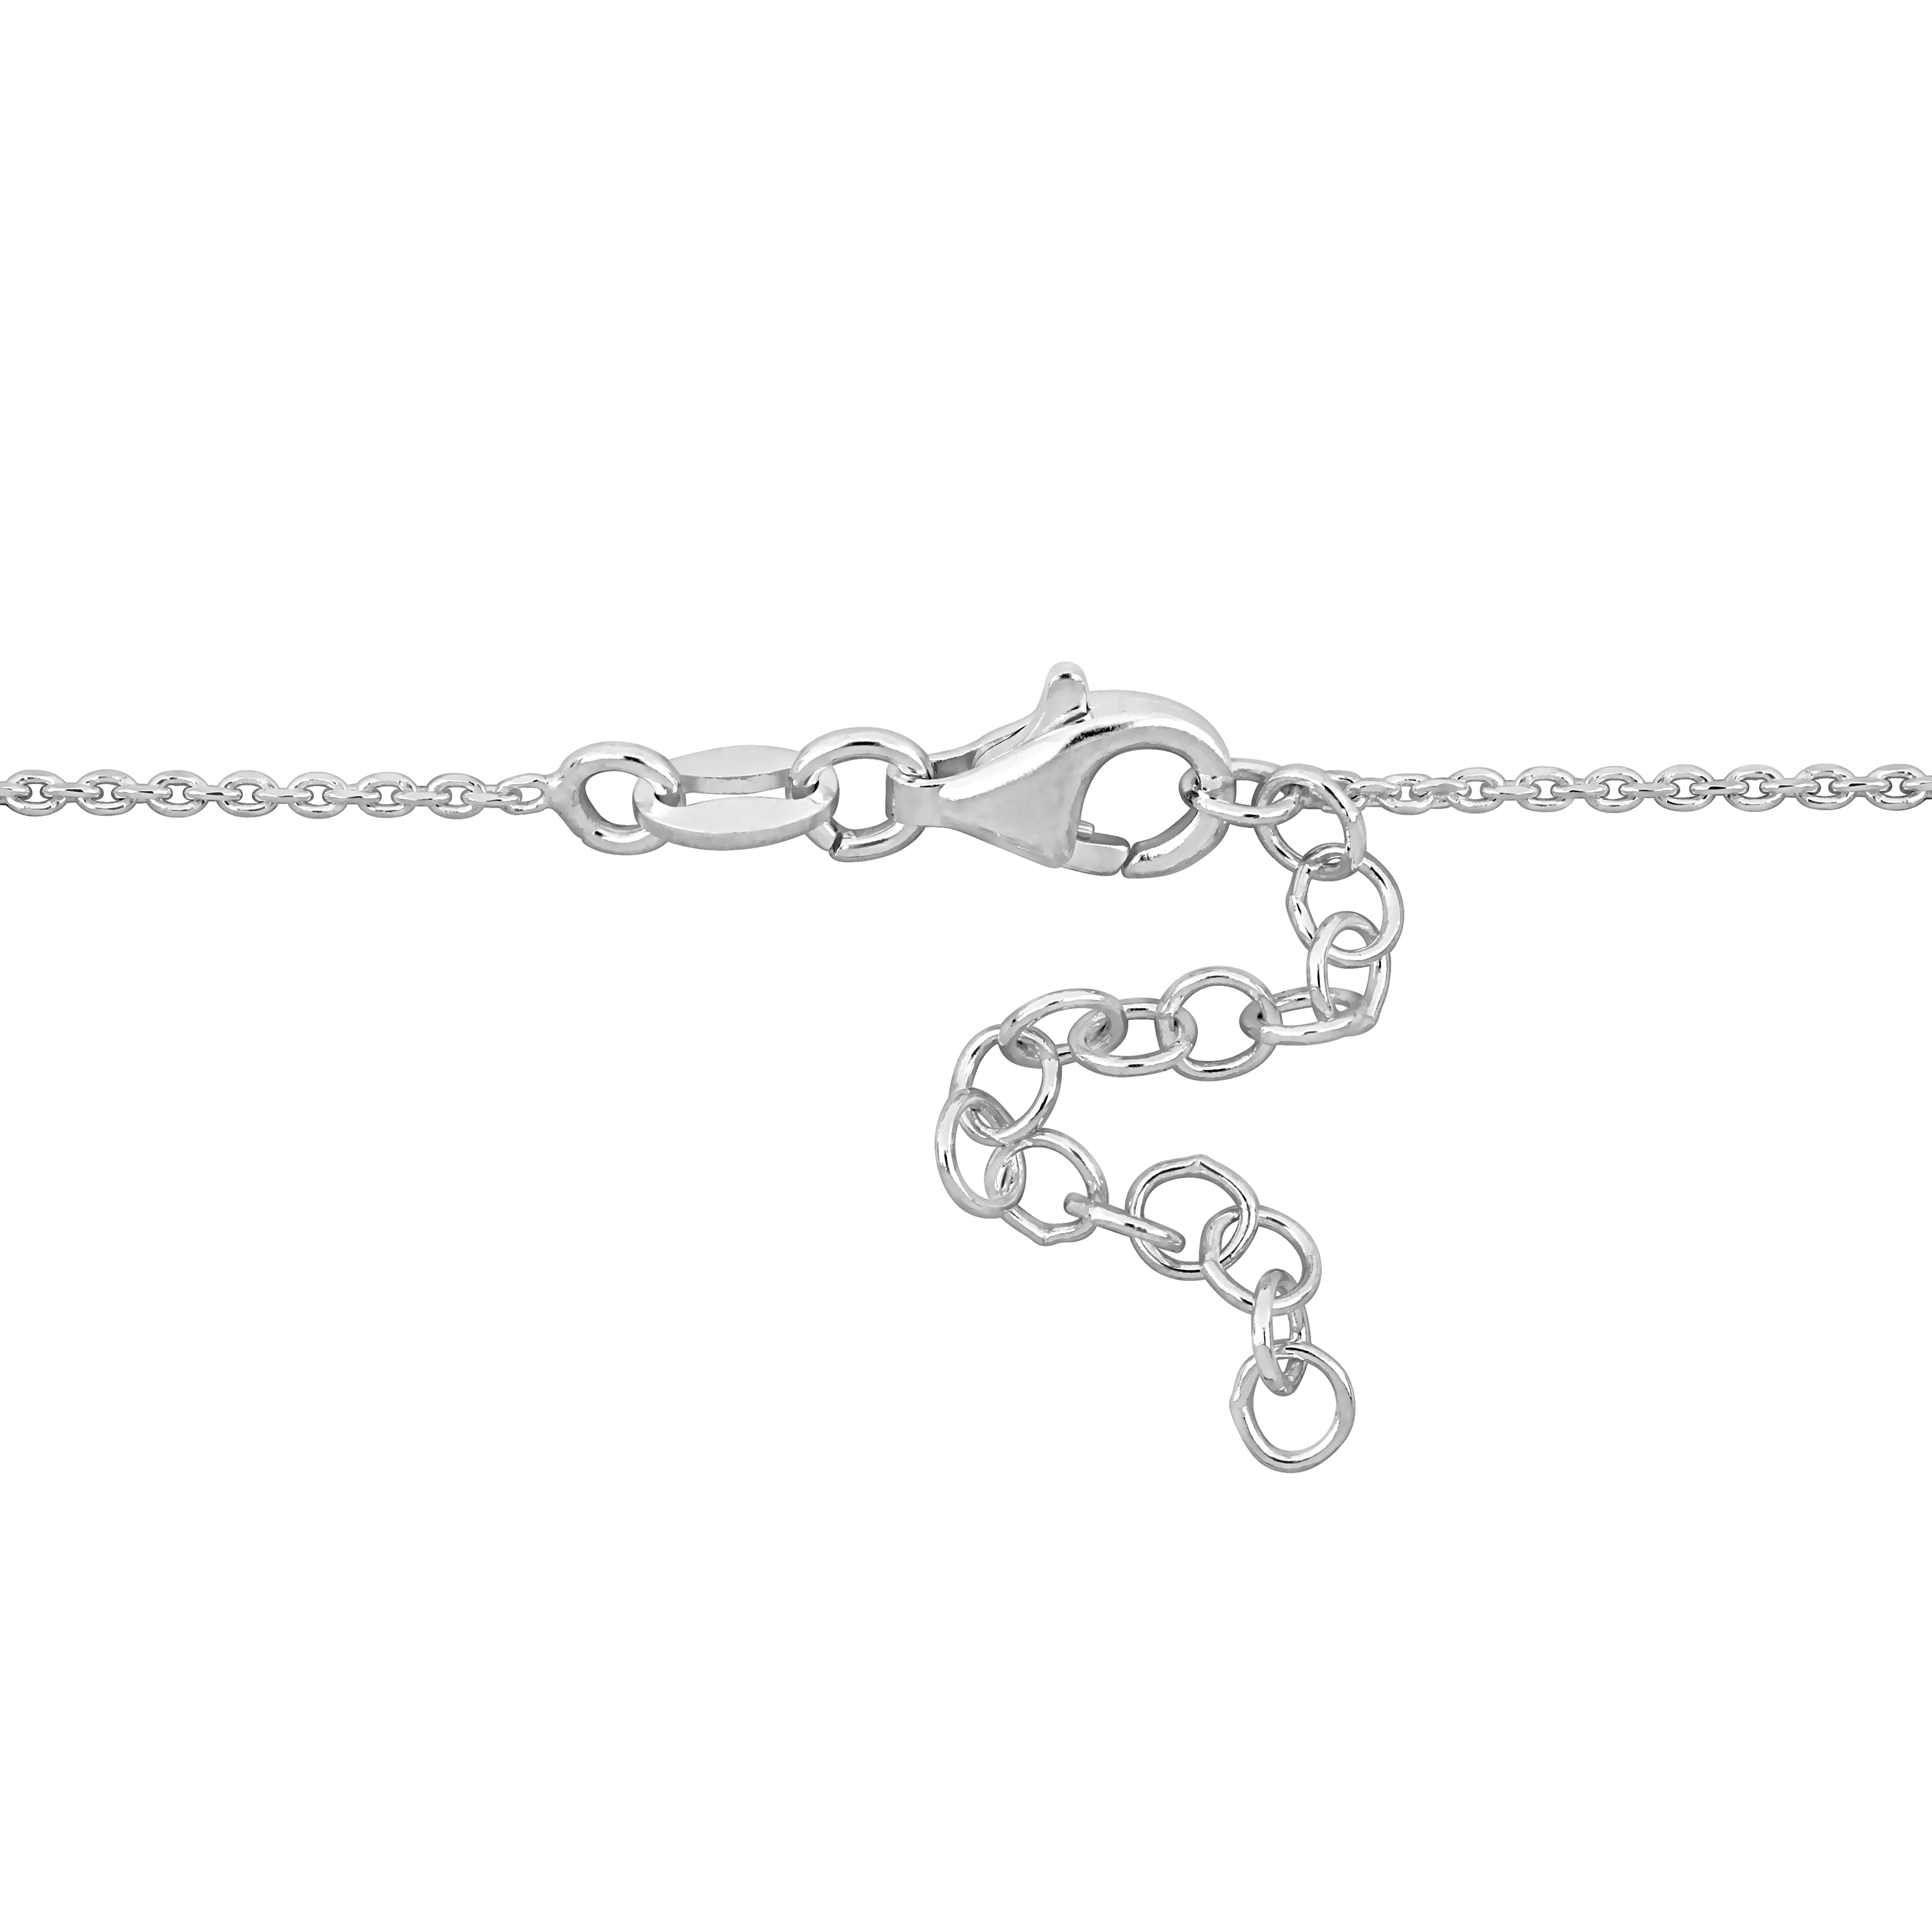 Double Heart Charm Bracelet in Sterling Silver - 7+1 in.